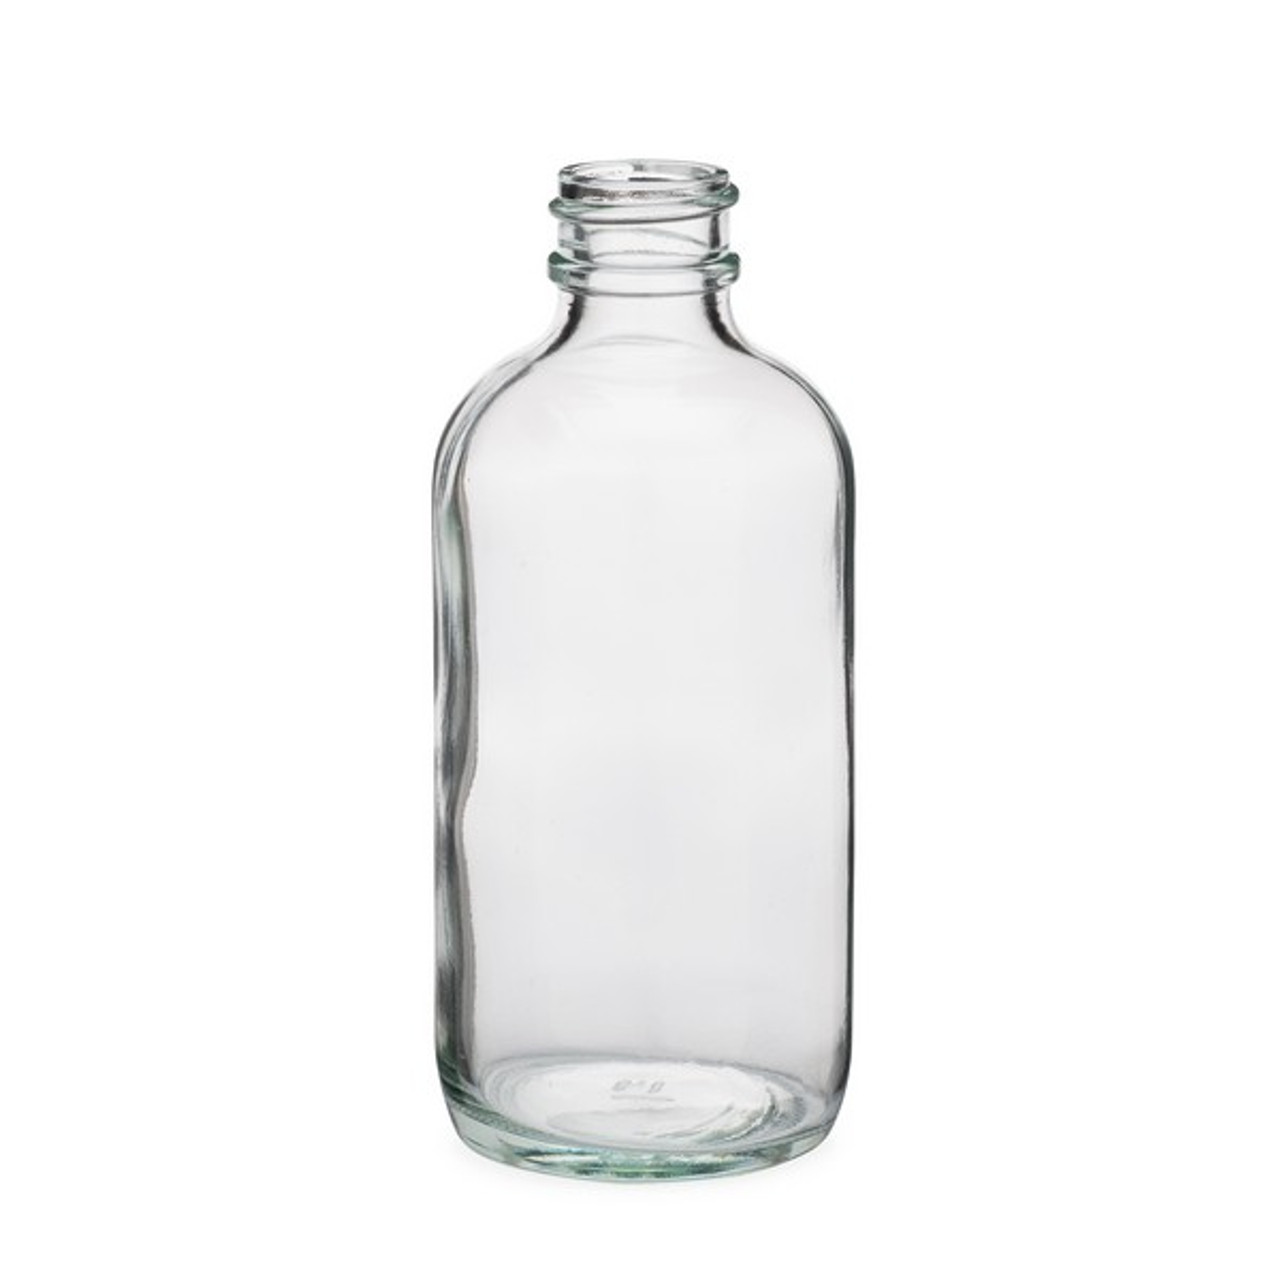 Glass 12 Oz Beverage Bottle Supplier, Boston Round Glass Bottle